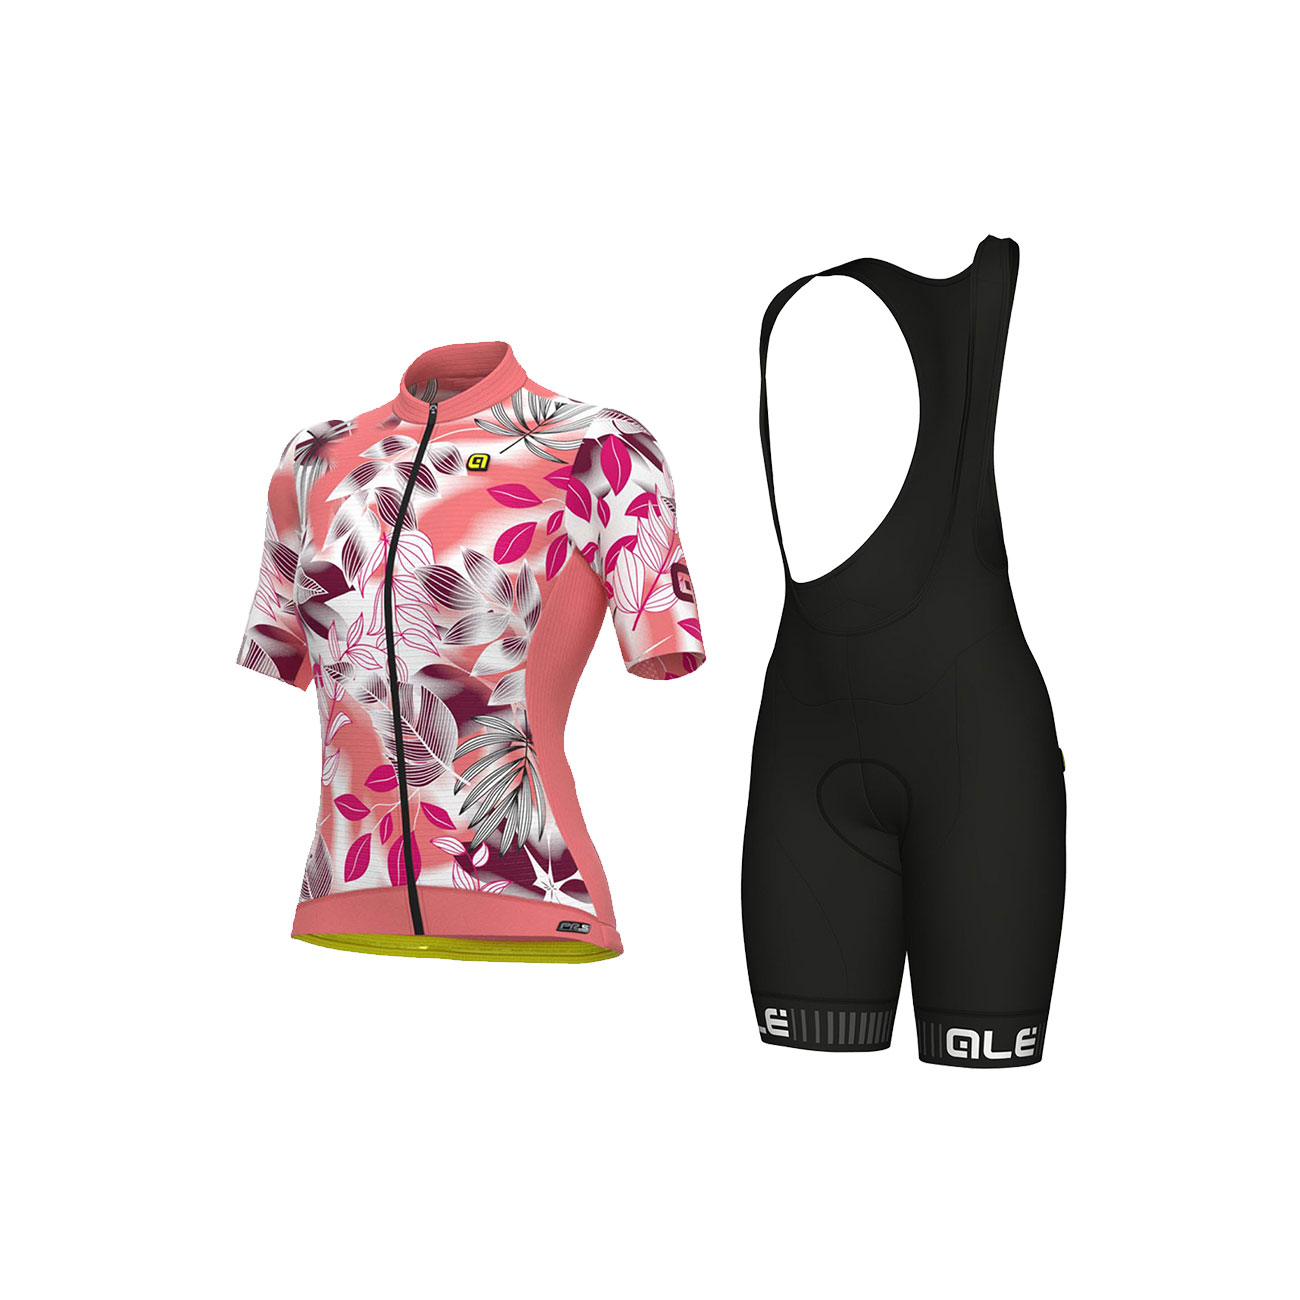 
                ALÉ Cyklistický krátký dres a krátké kalhoty - PR-S GARDEN LADY - bordó/černá/bílá/růžová
            